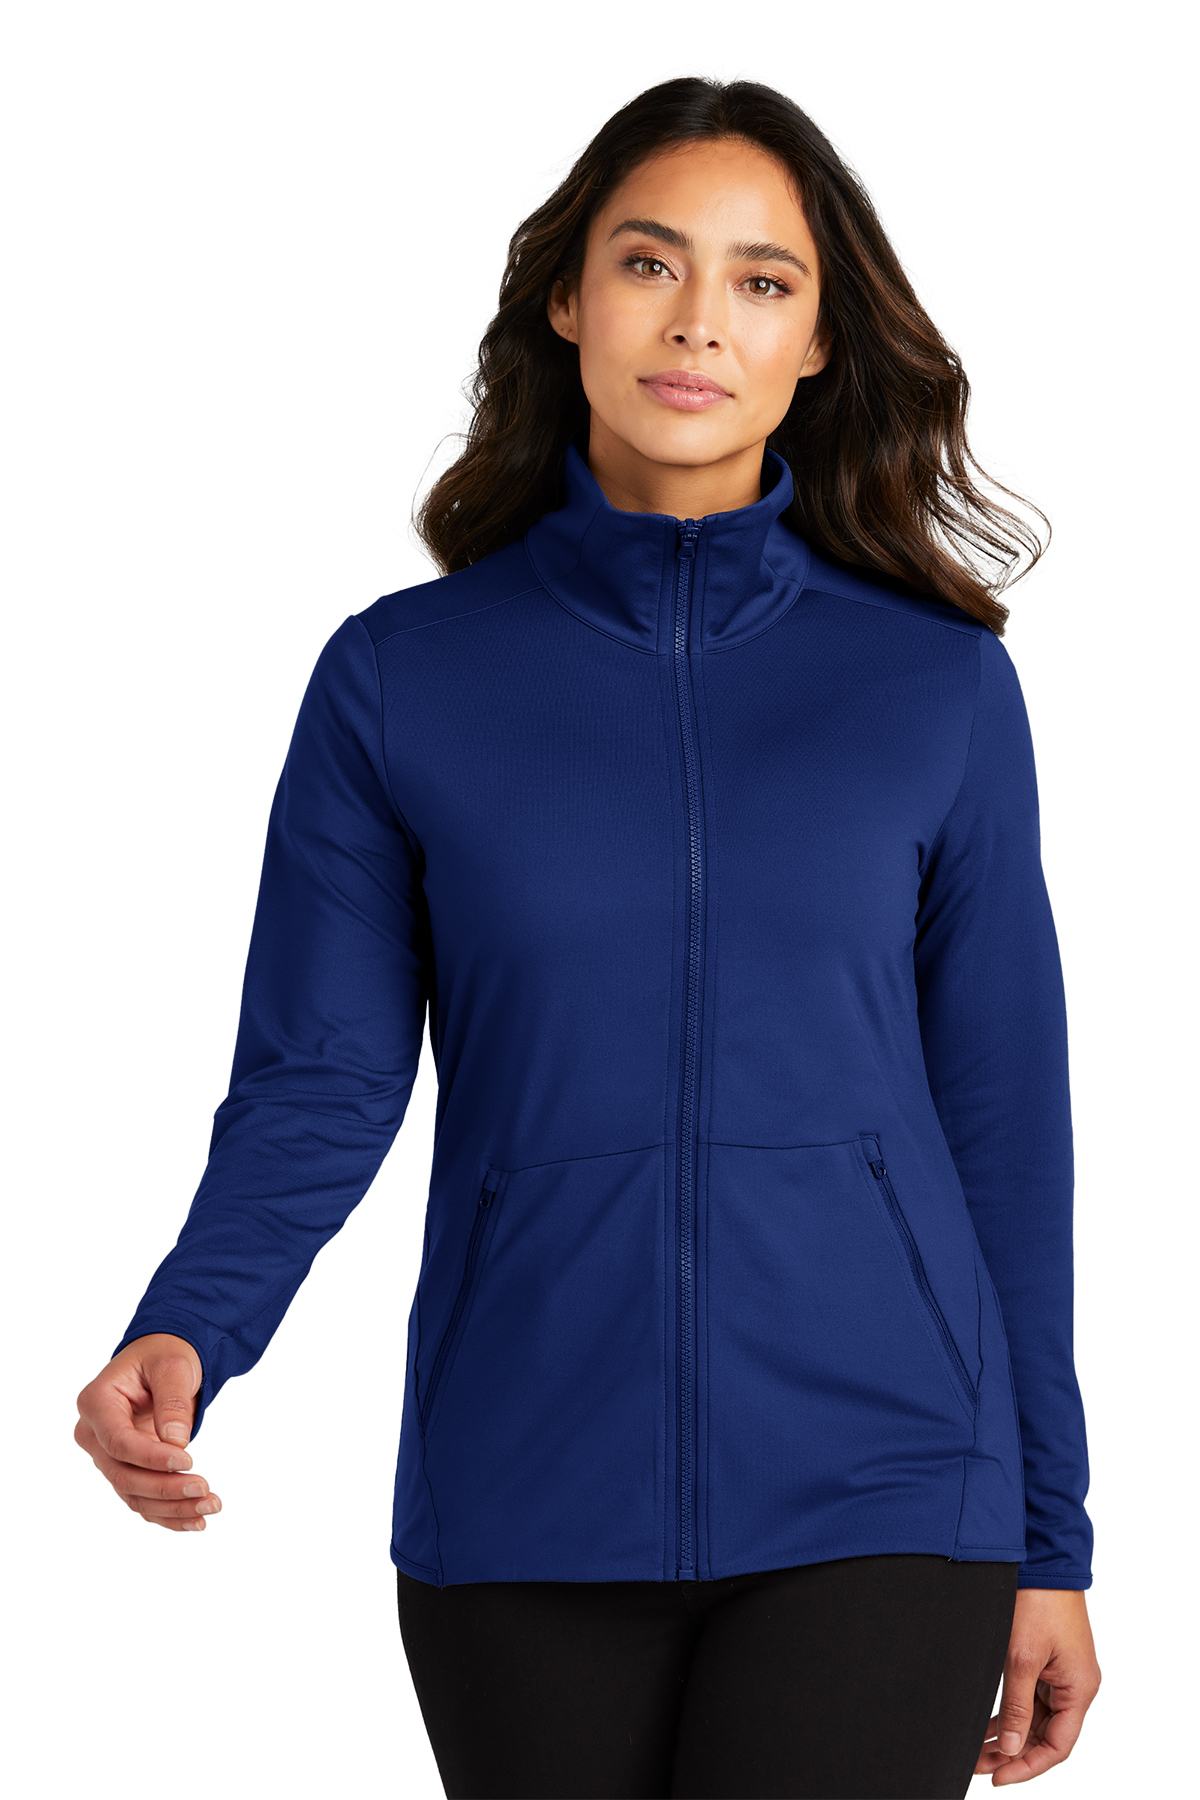 Port Authority Ladies Accord Stretch Fleece Full-Zip, Product